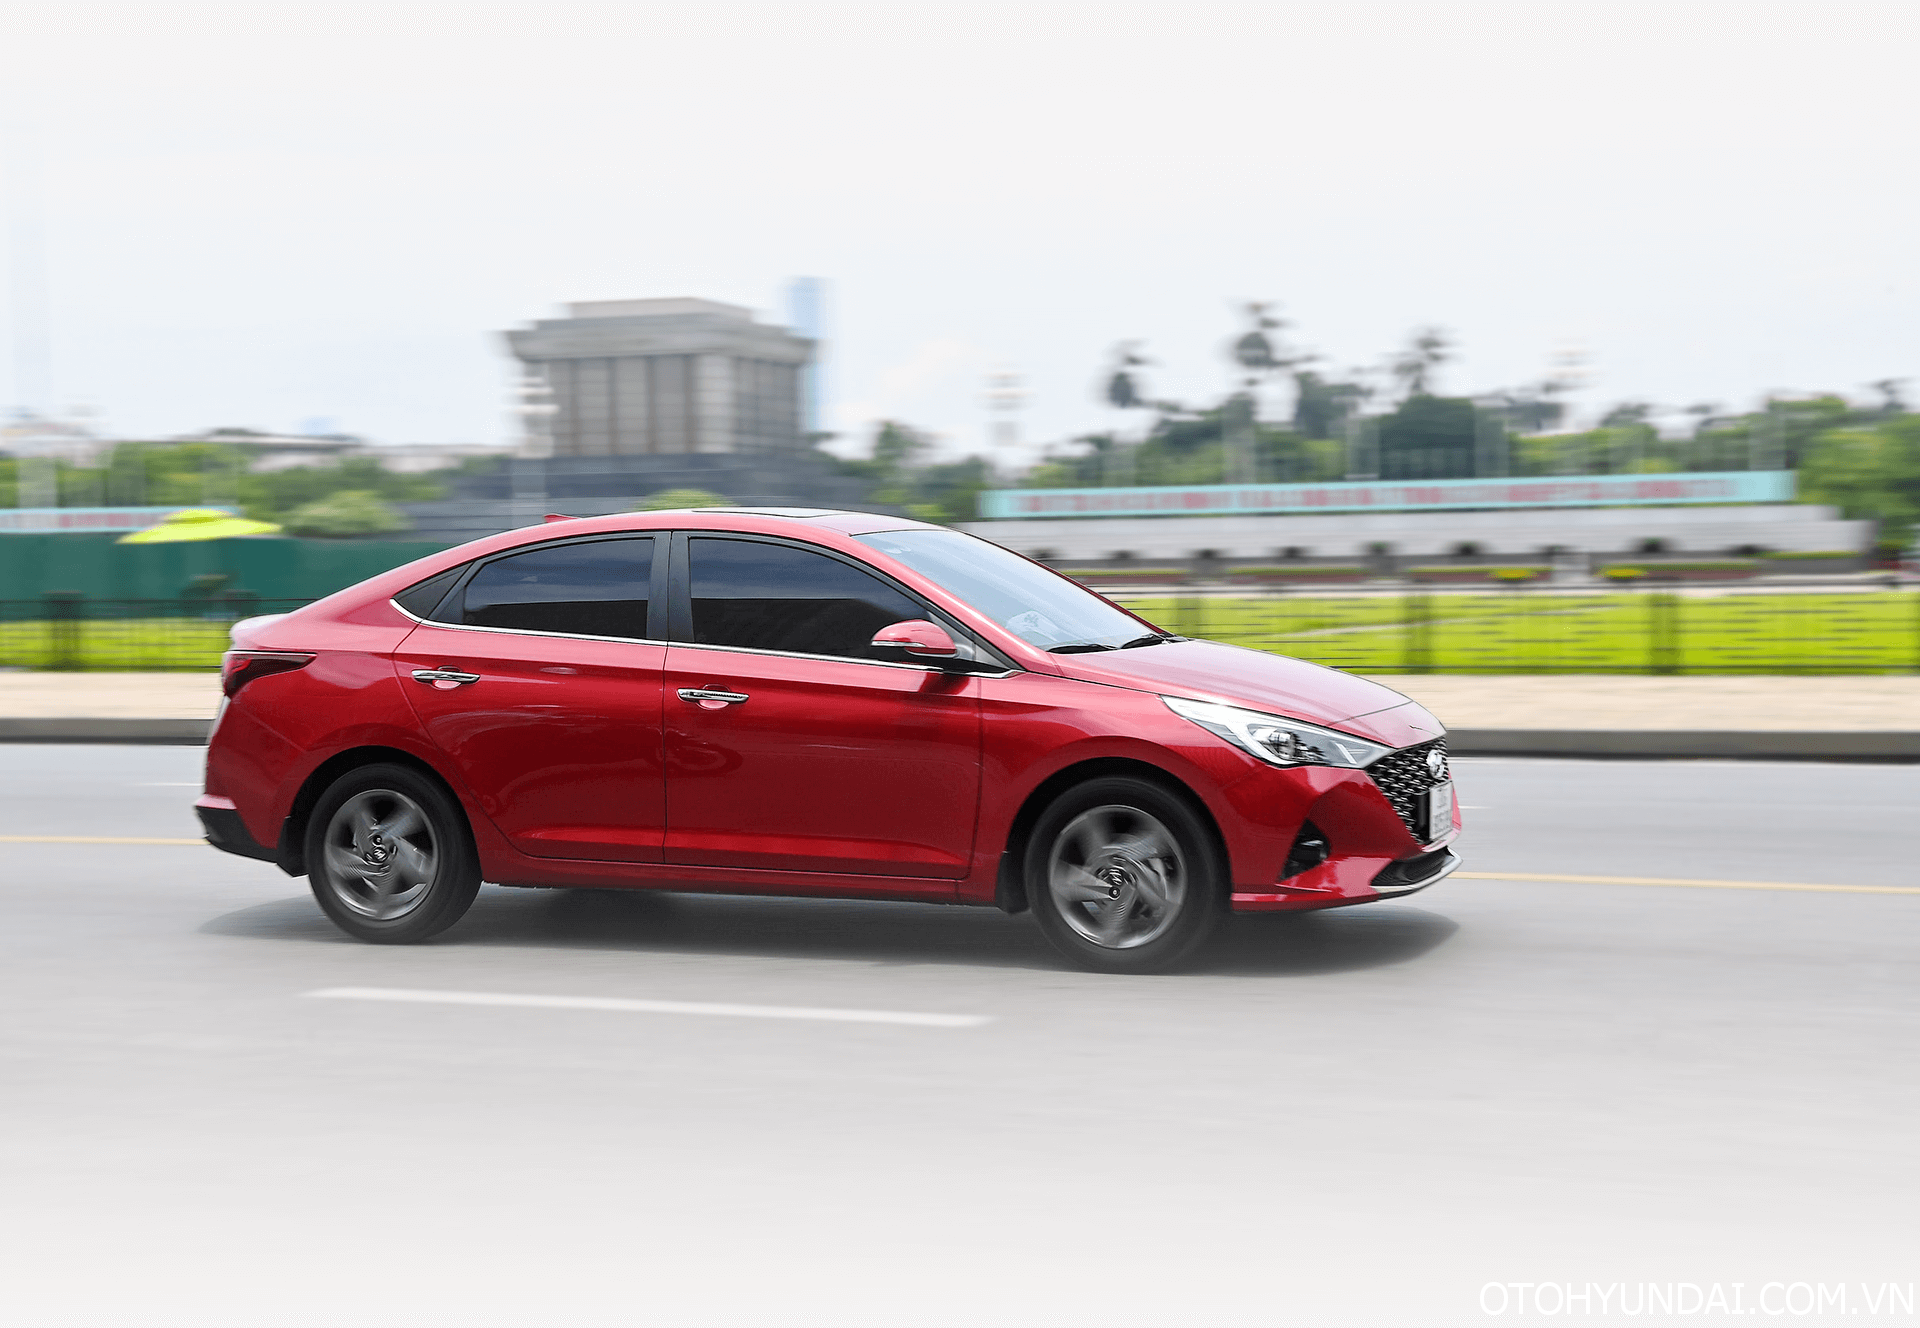 eccent 2023 | Lối thiết kế đơn giản nhưng đẹp mắt ở phần thân của Hyundai Accent